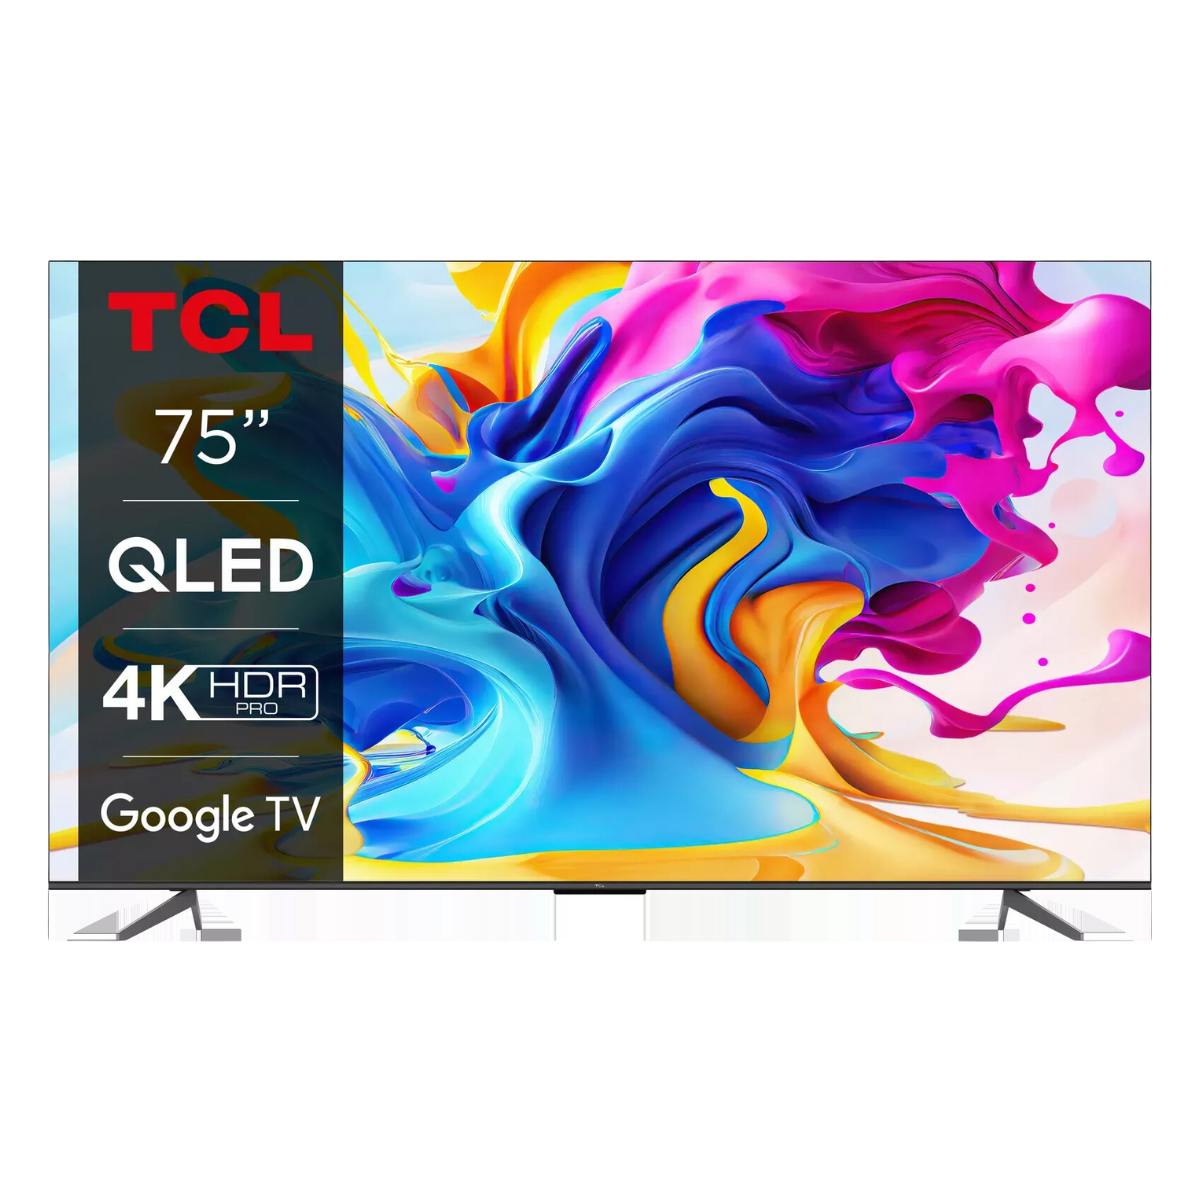 TCL QLED TV 75